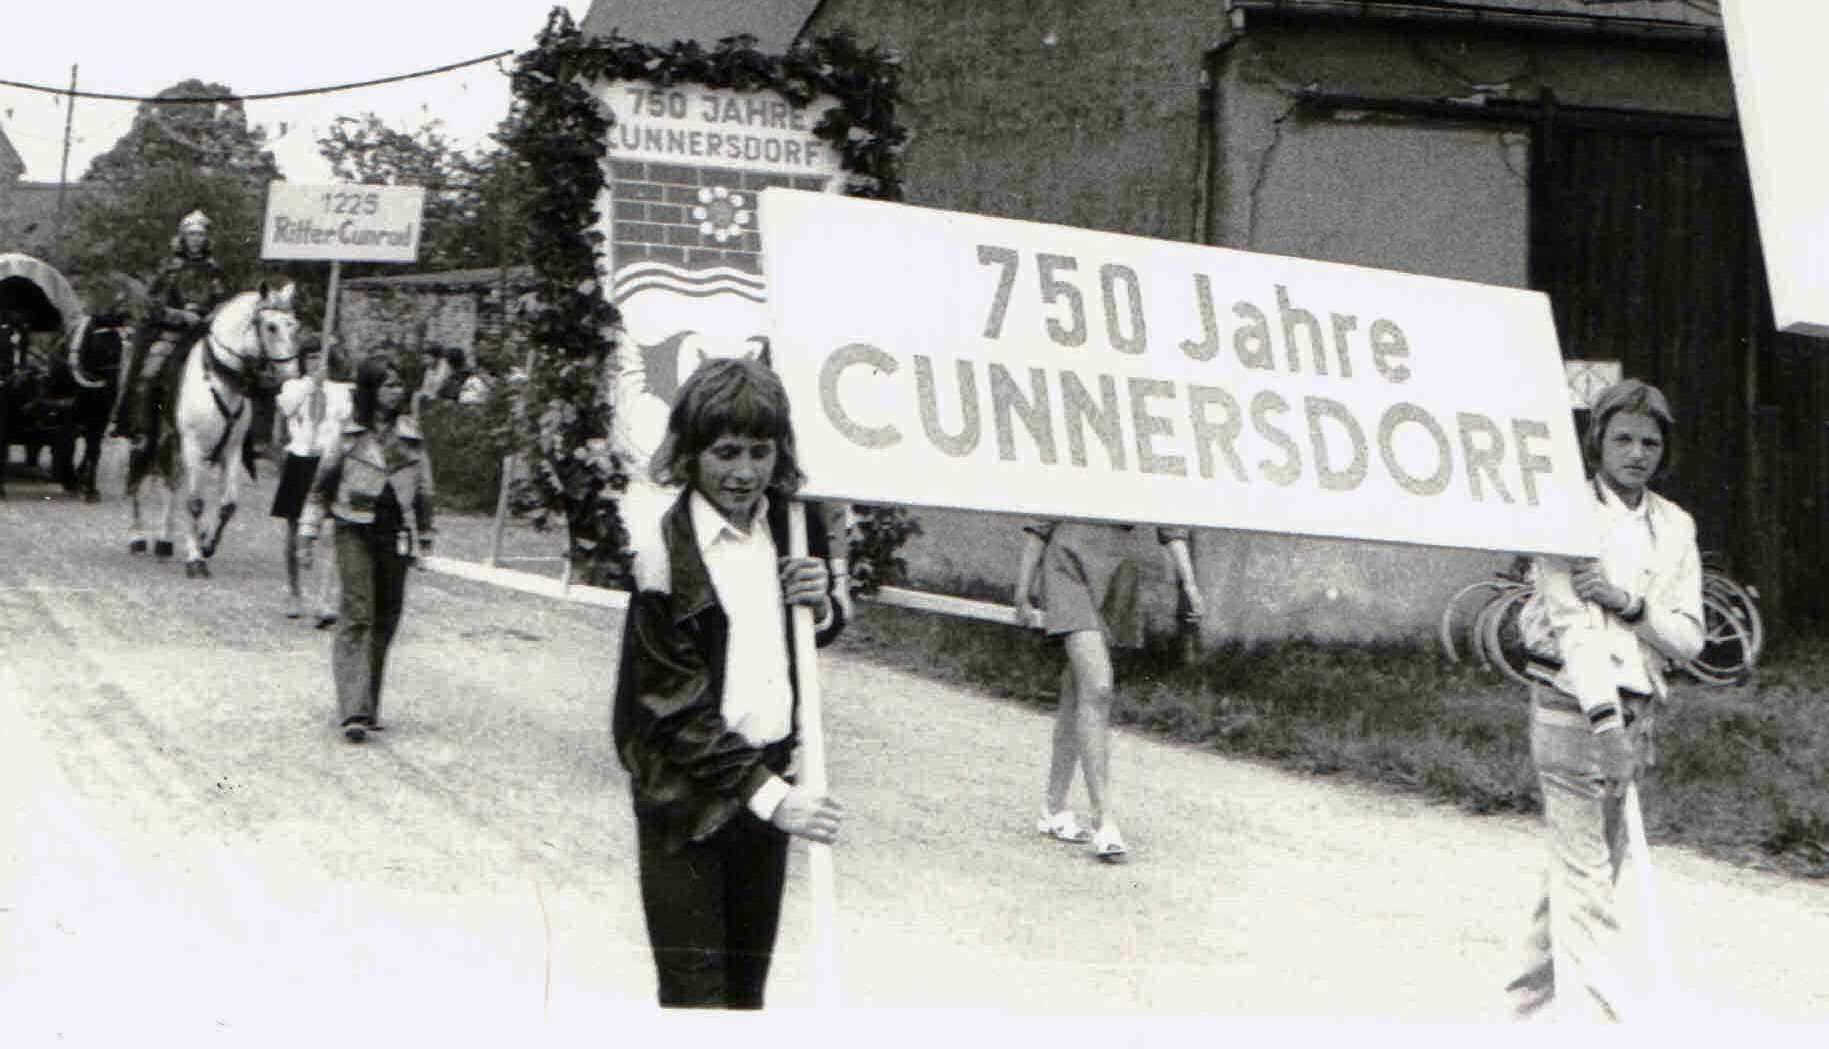 Festumzug zur 750-Jahrfeier in Cunnersdorf, 1975.